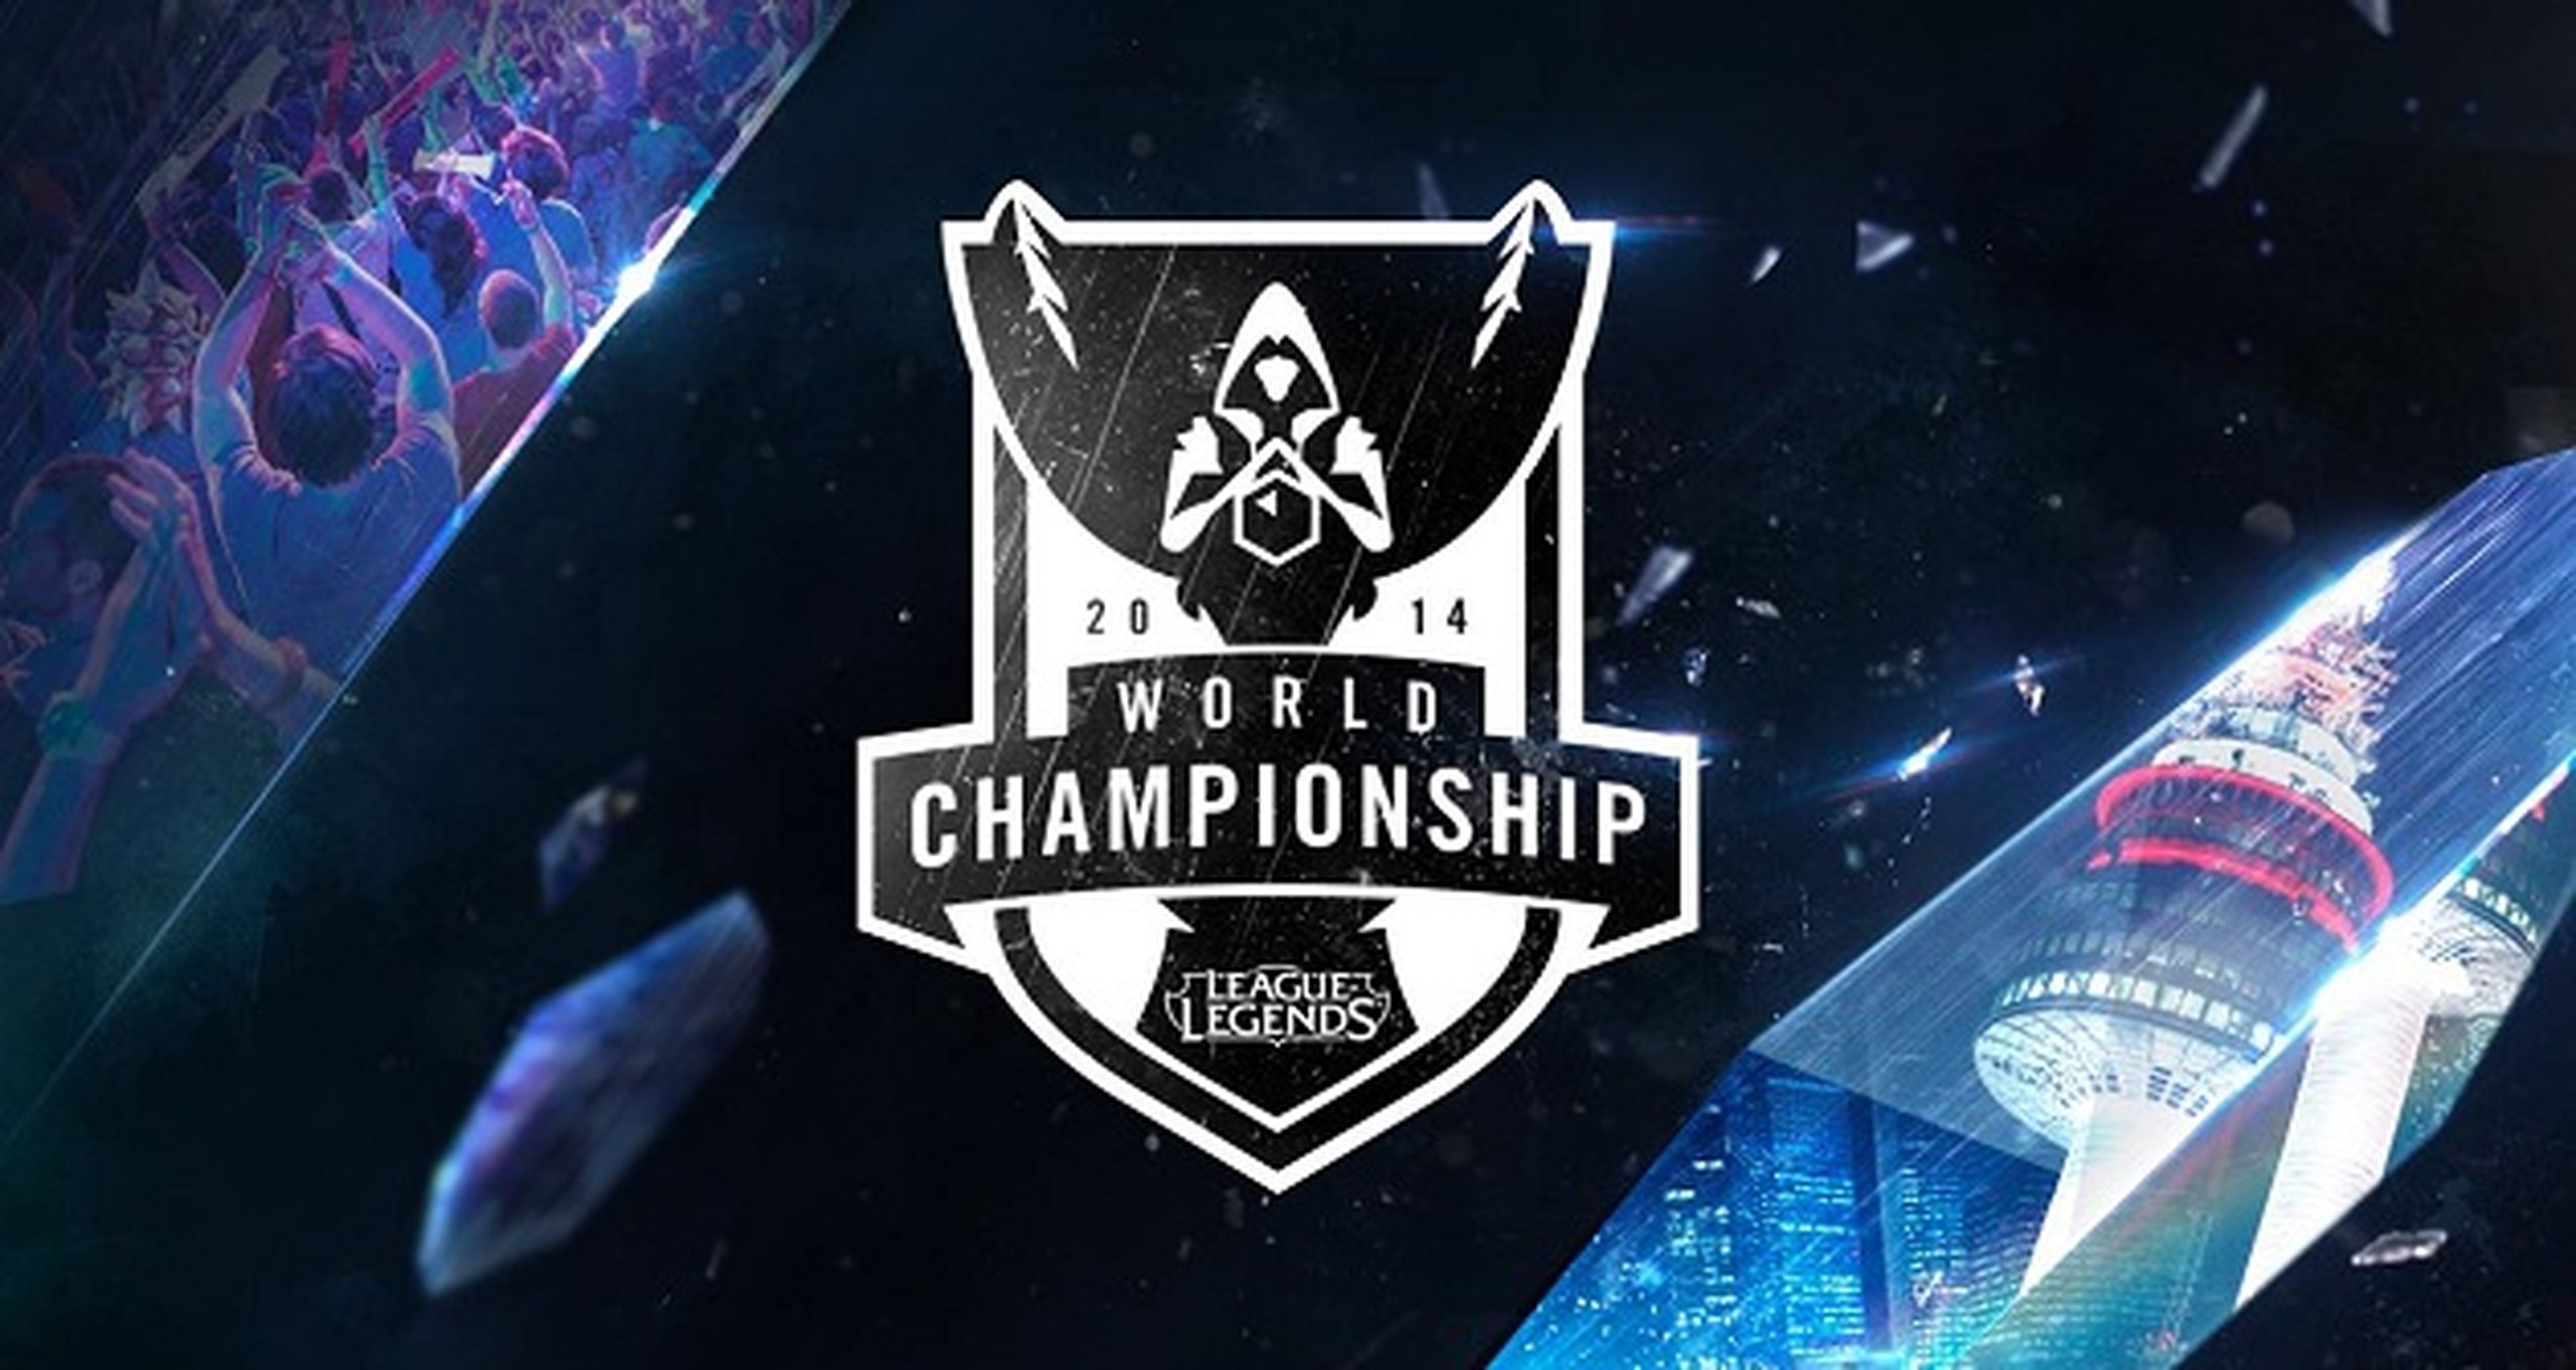 Detalles del World Championship 2014 de League of Legends